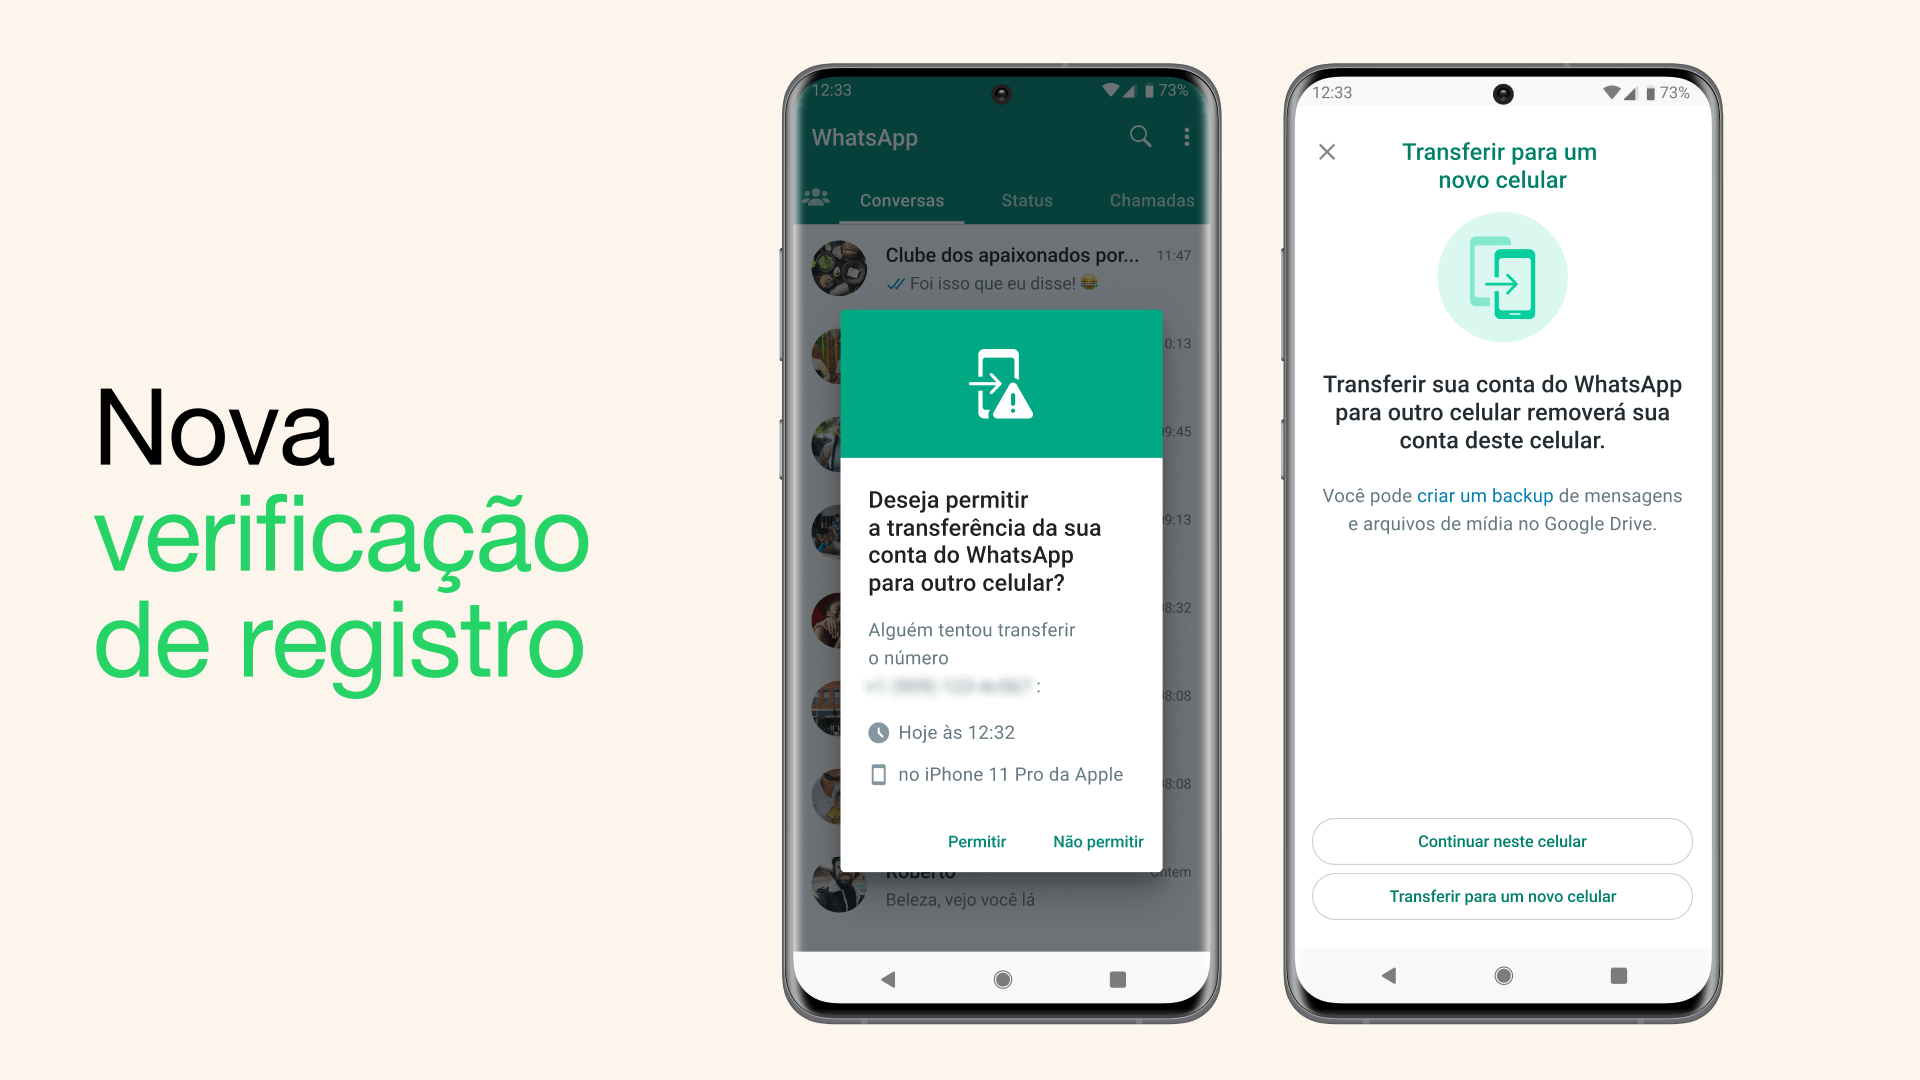 Dois prints do WhatsApp para Android mostrando a nova verificação de registro, que coíbe o “roubo” de contas do app.